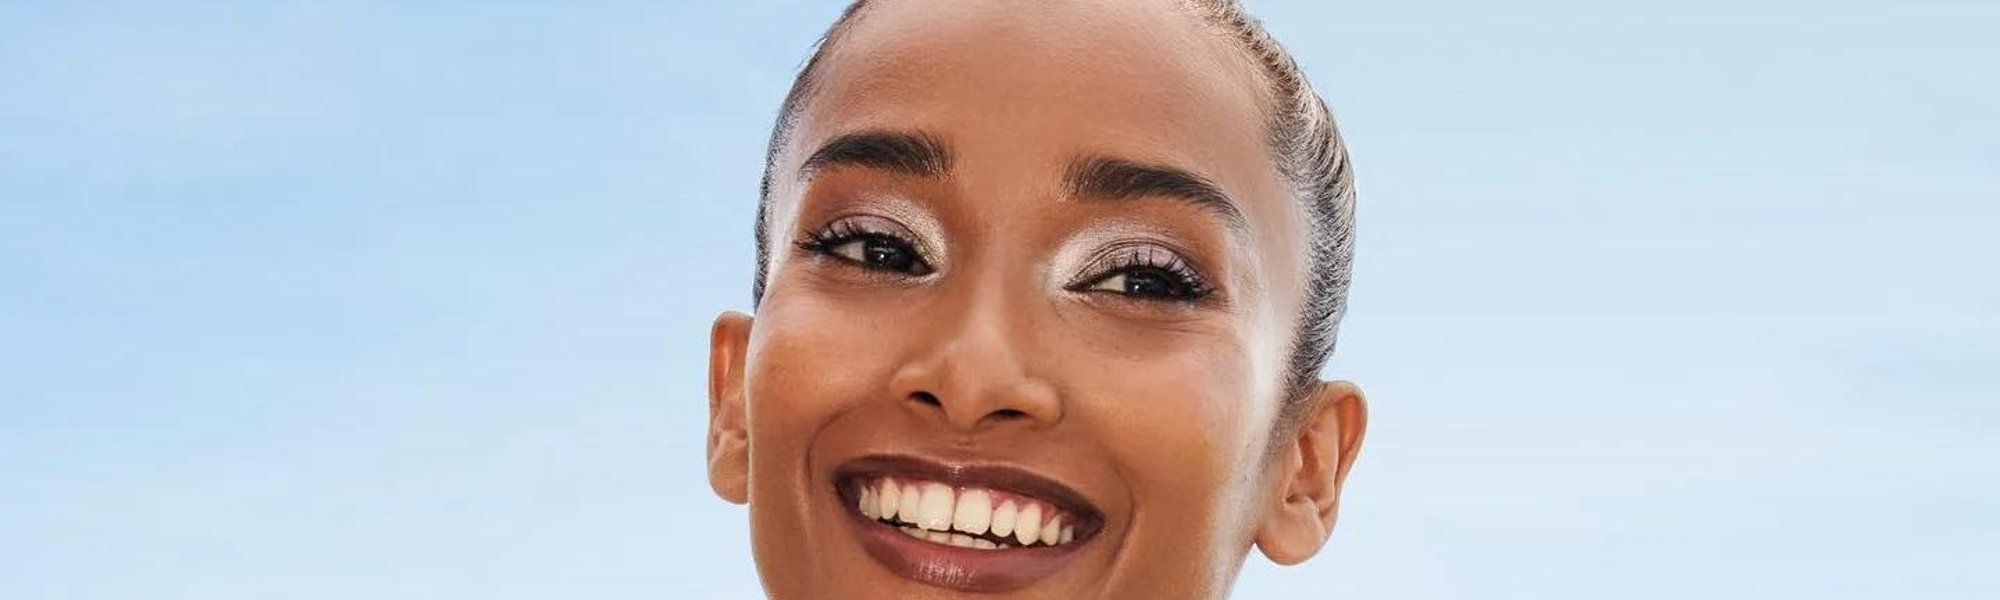 ¿Sirve la vitmina C para rejuvencer la mirada y reducir las ojeras?| L'Oréal Paris